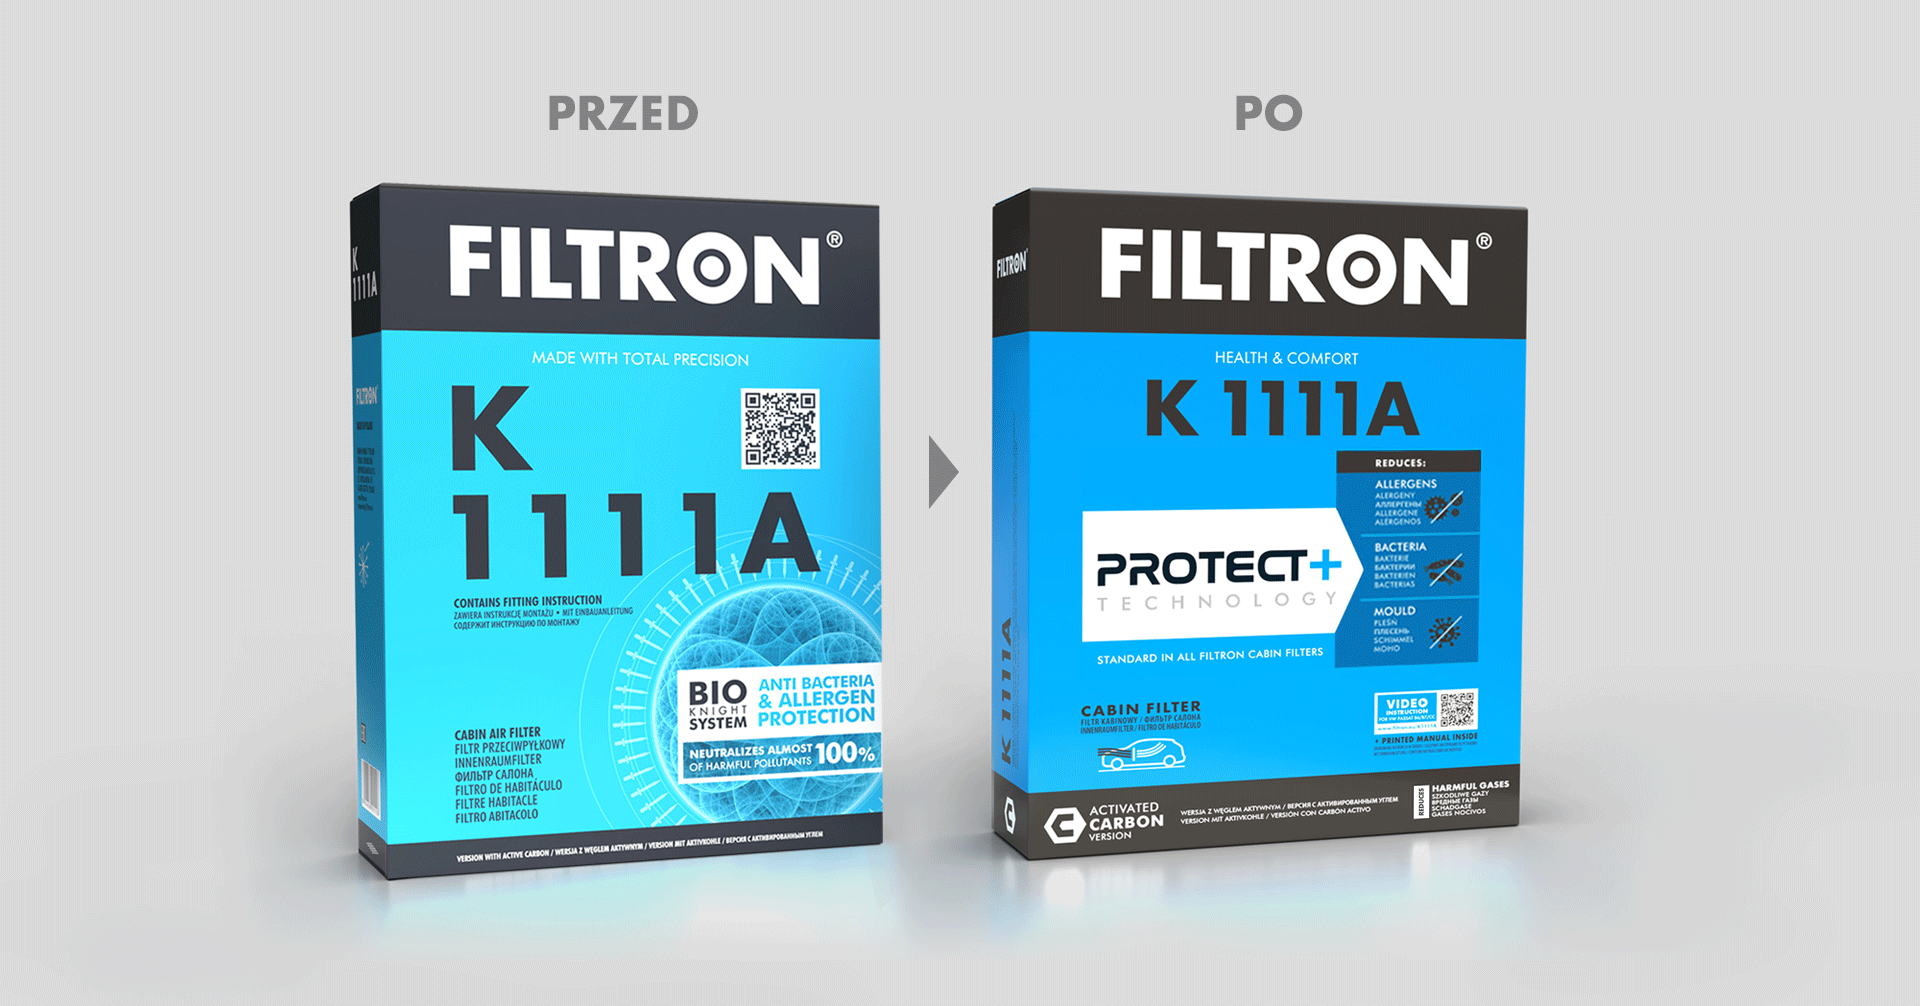 Filtron redesign – porównanie designu opakowań przed i po.